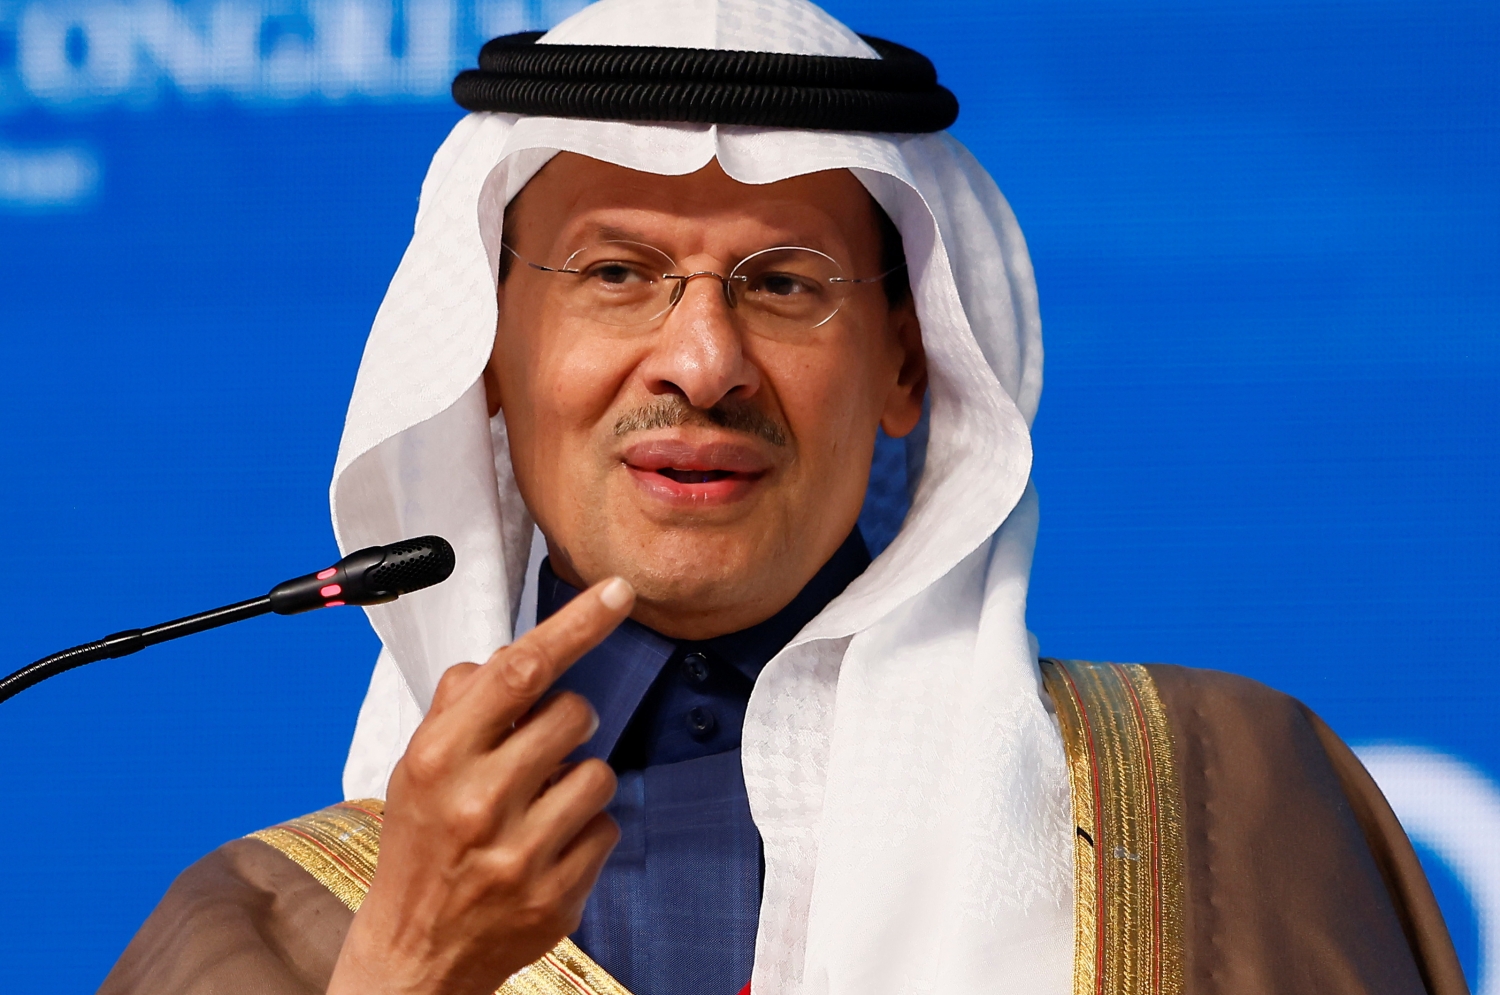 Ả Rập Xê-út phủ nhận tin đồn thất thiệt của báo Mỹ về sản lượng dầu OPEC